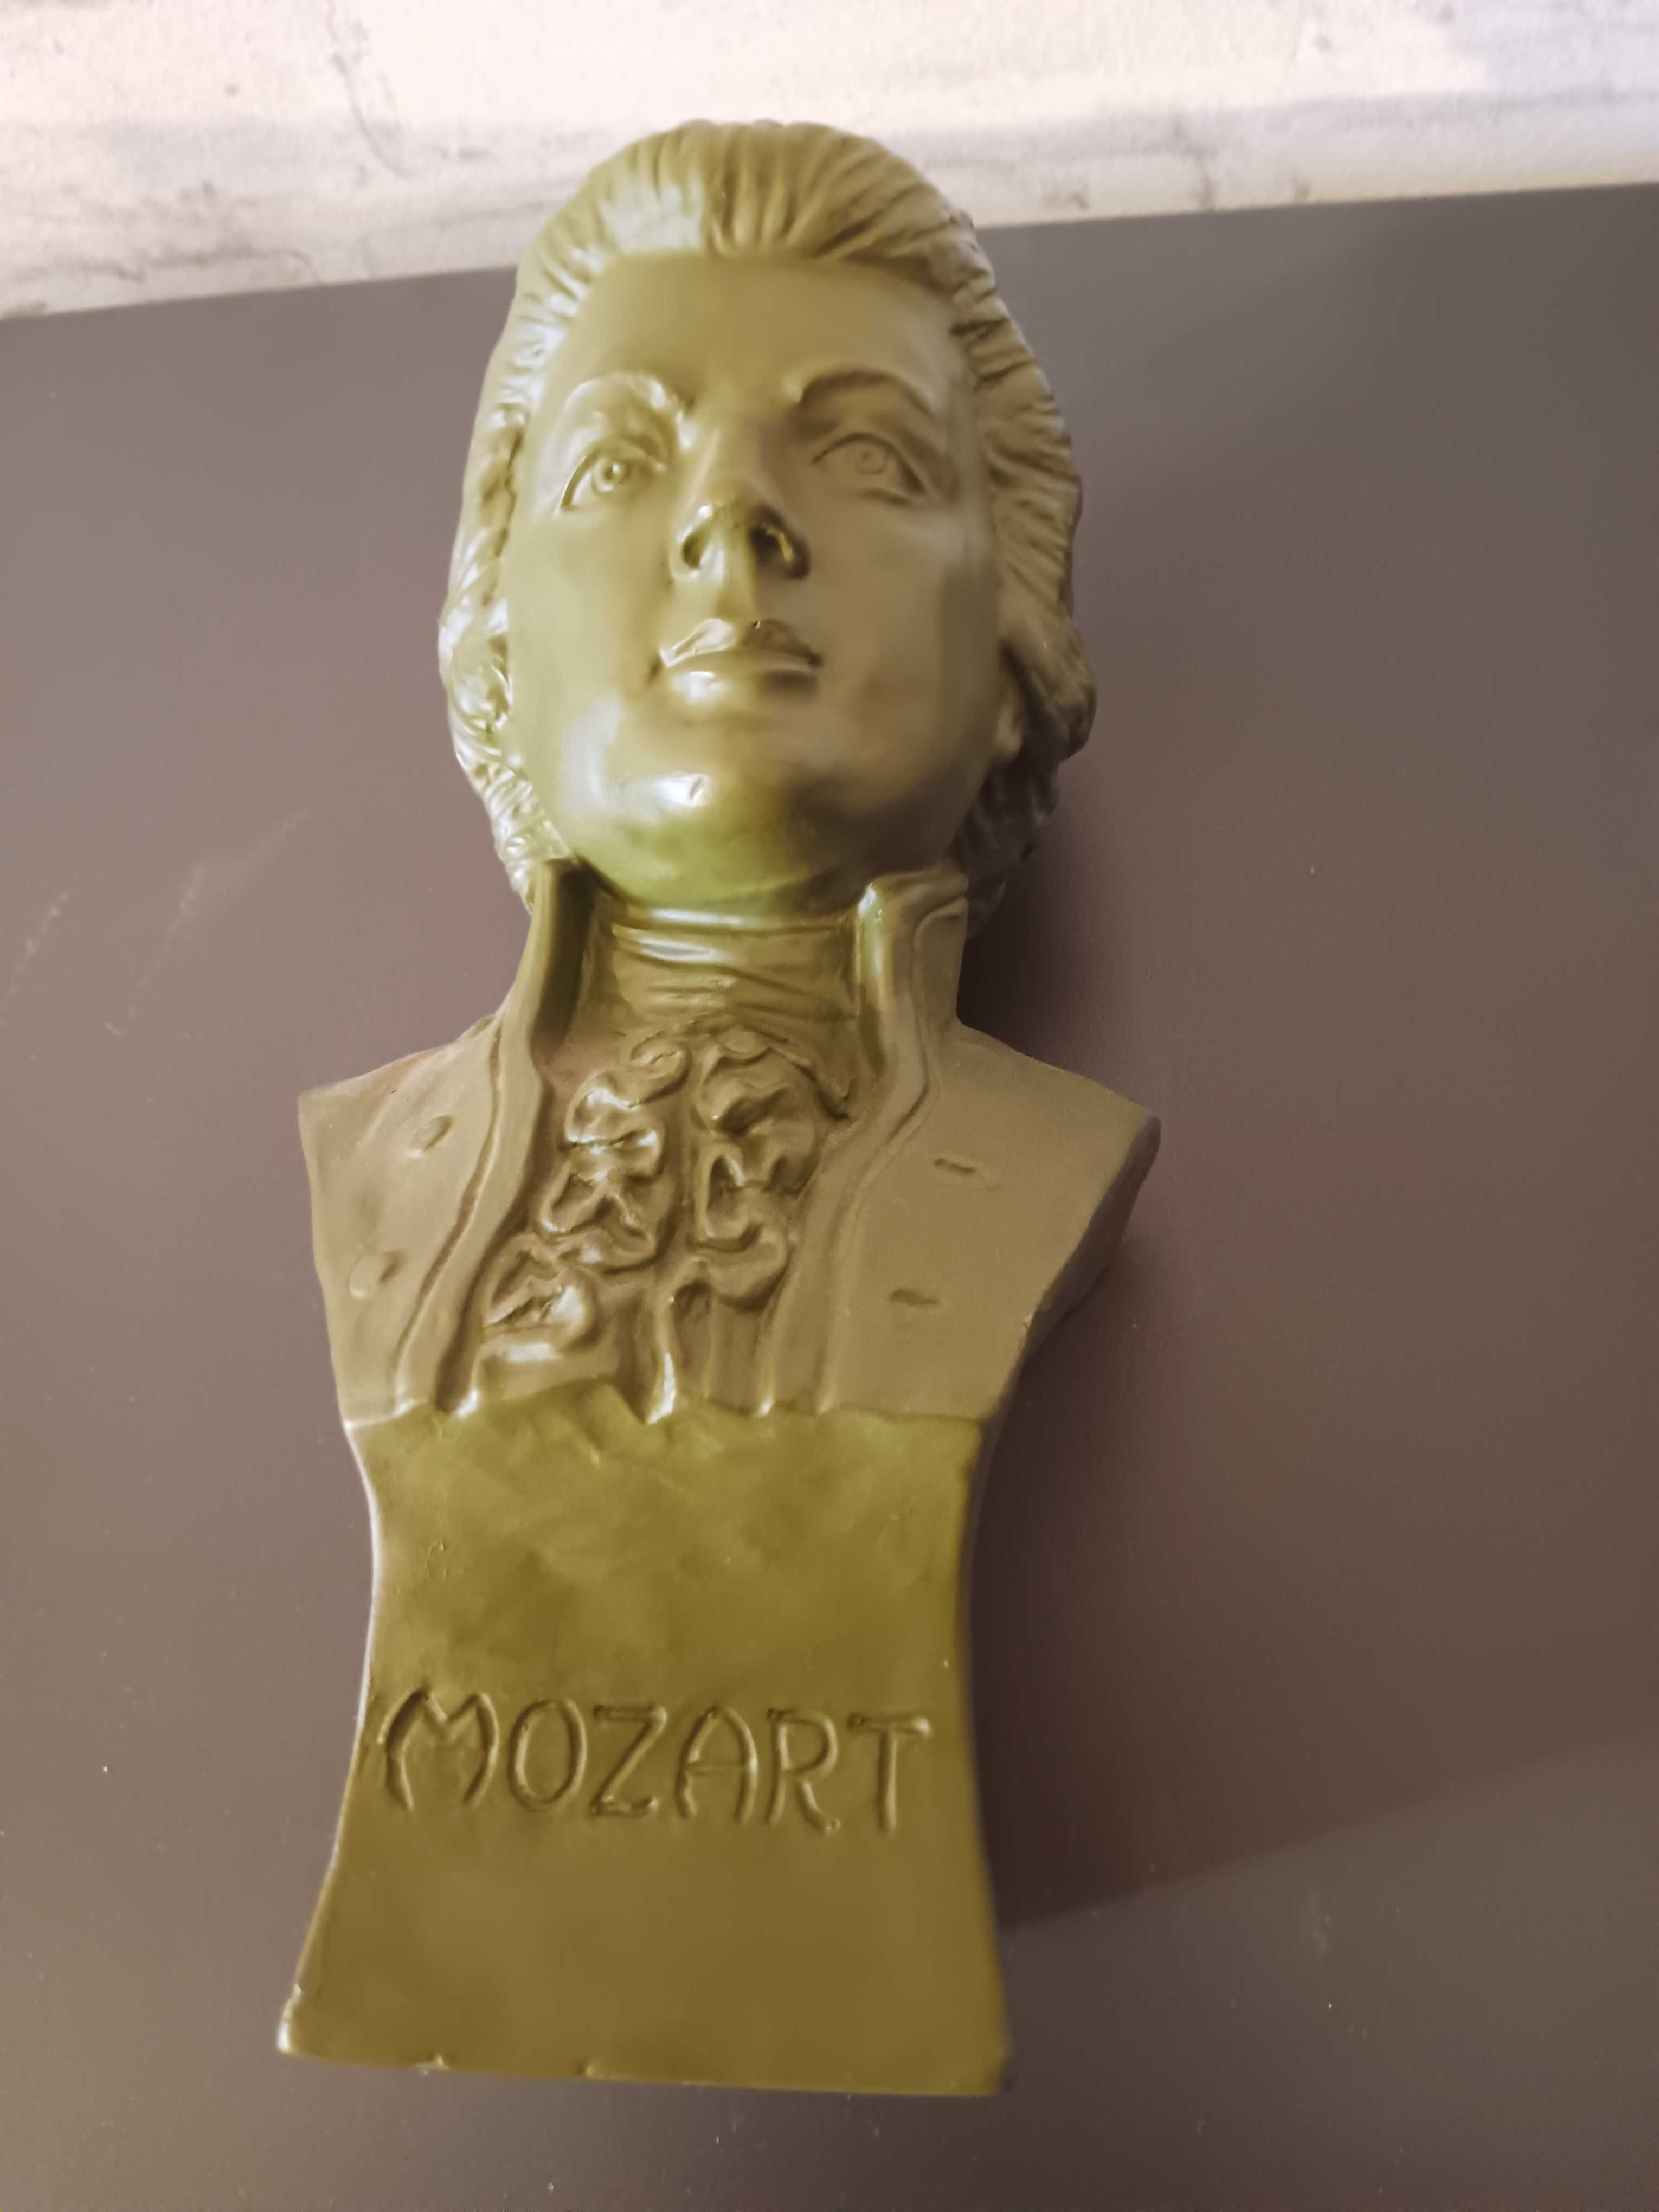 Busto de Mozart - Ler descrição